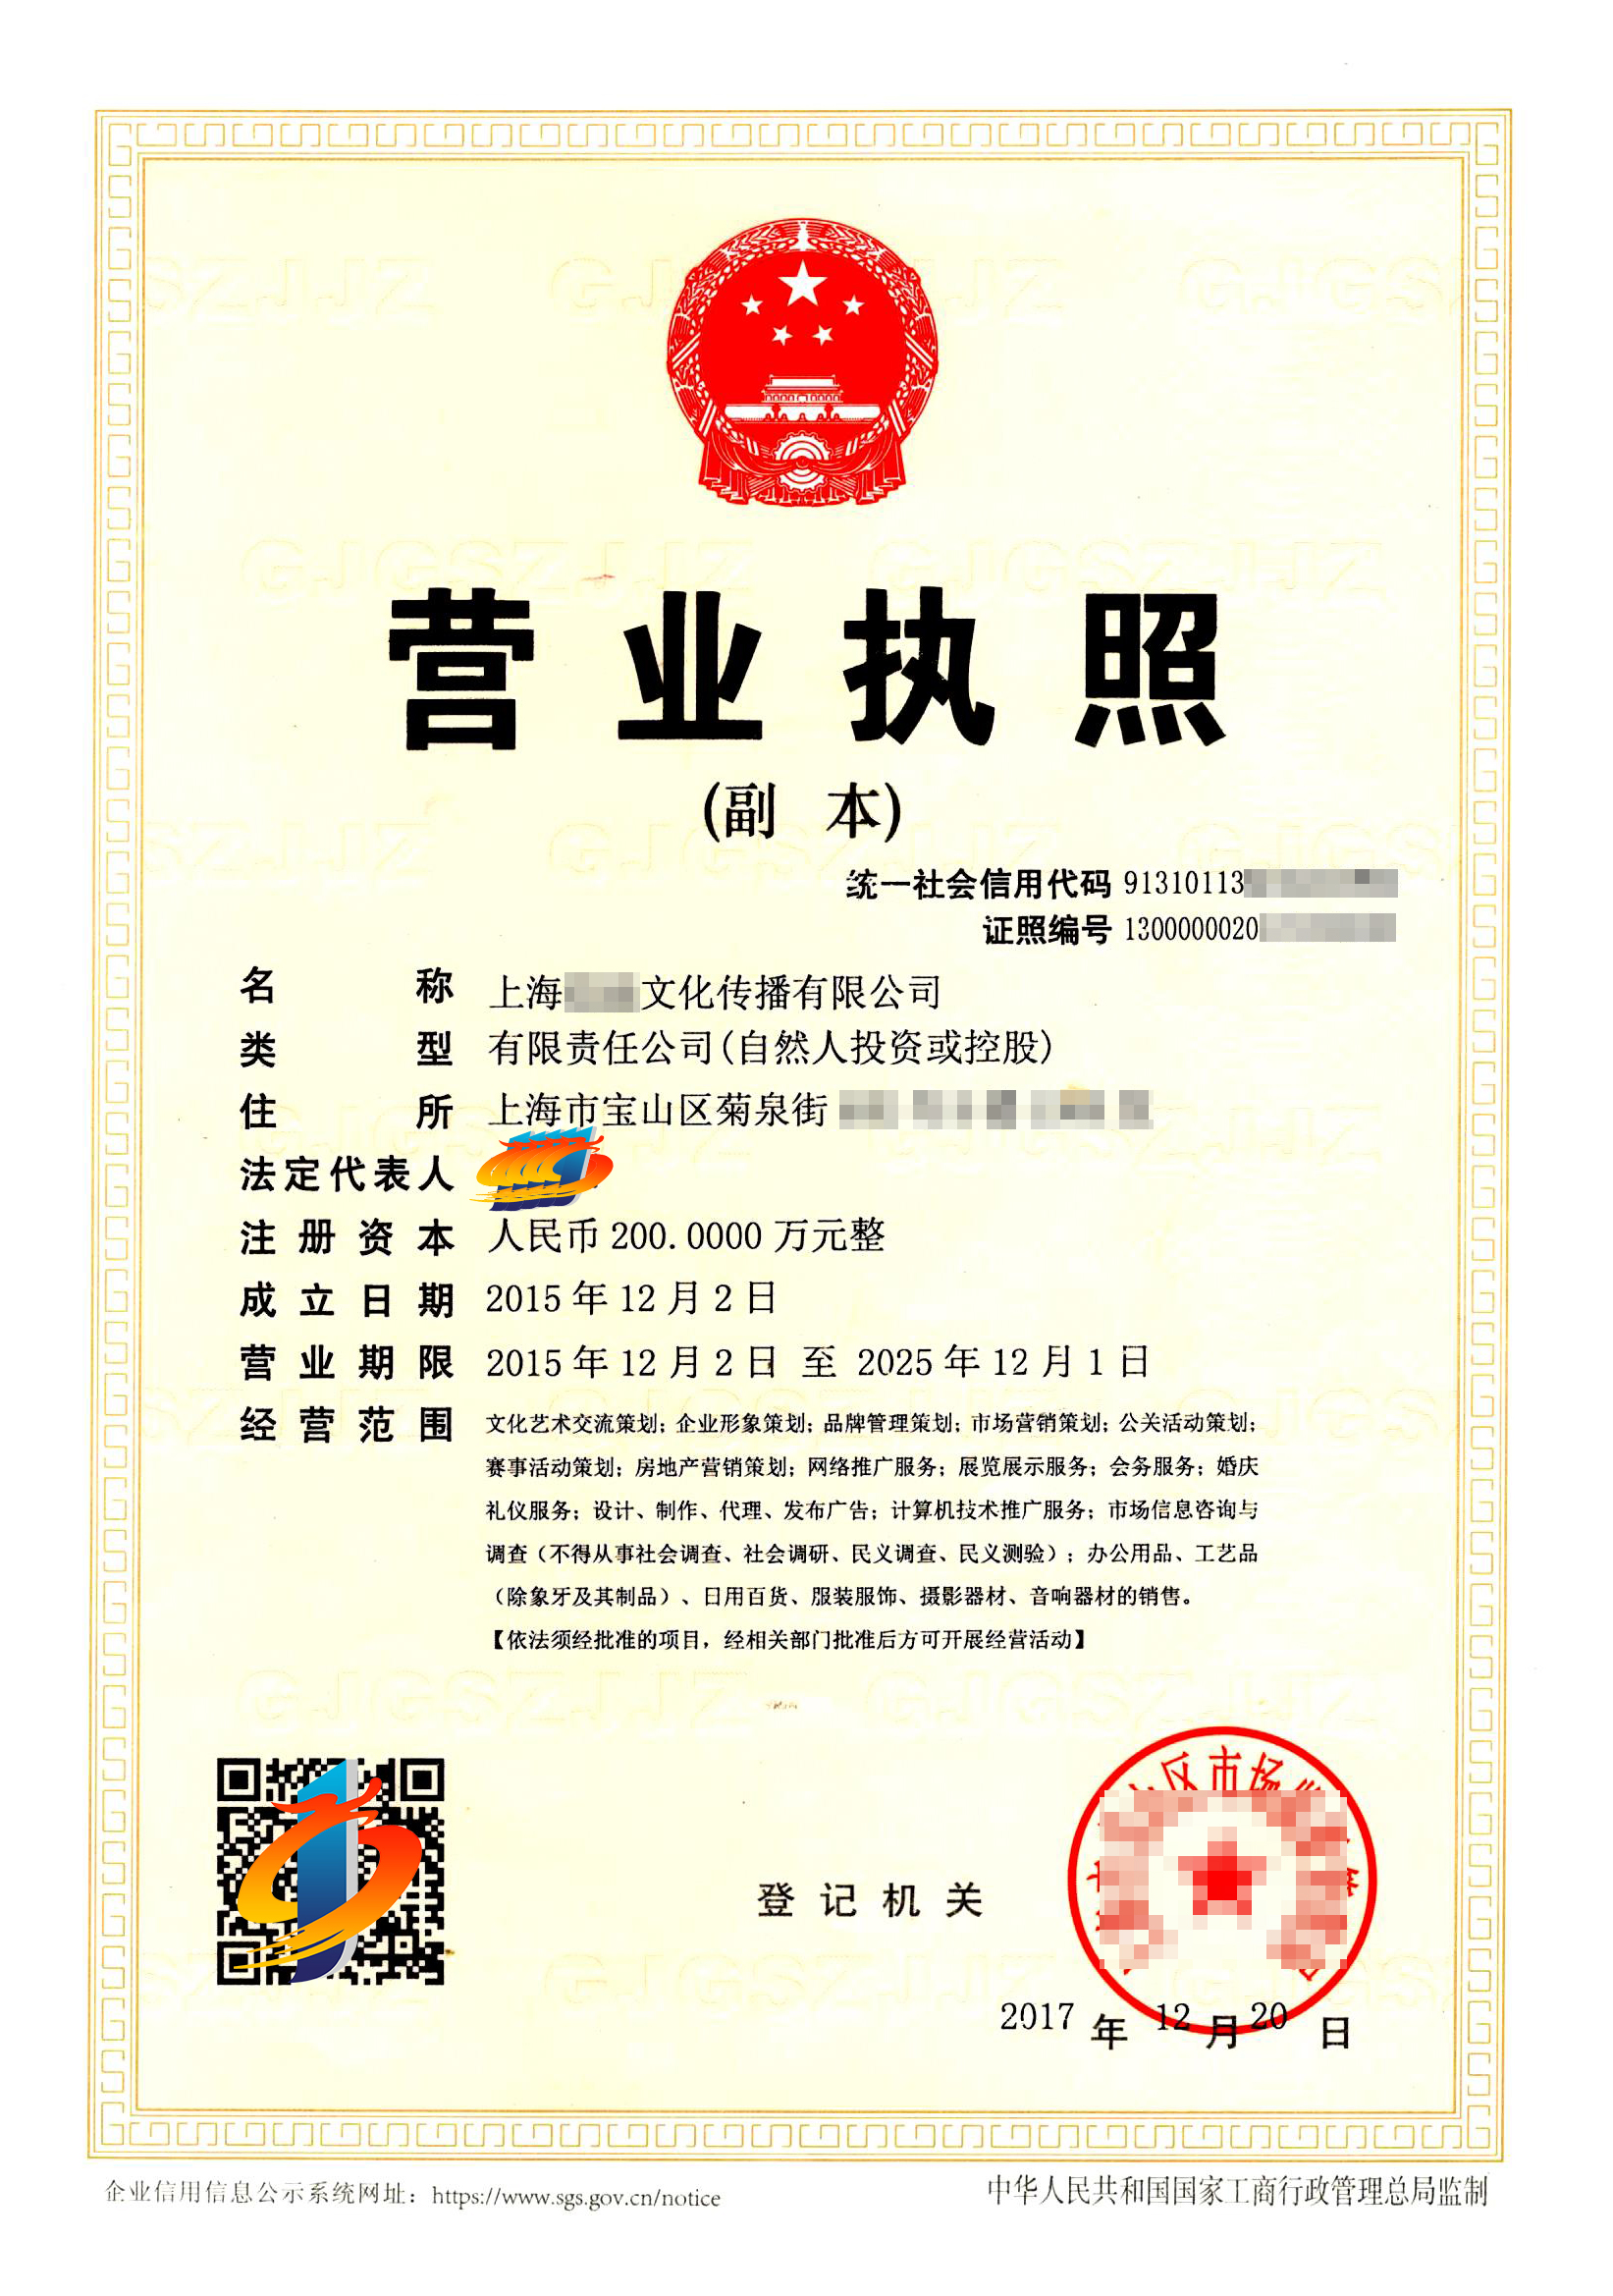 注册上海文化传播公司